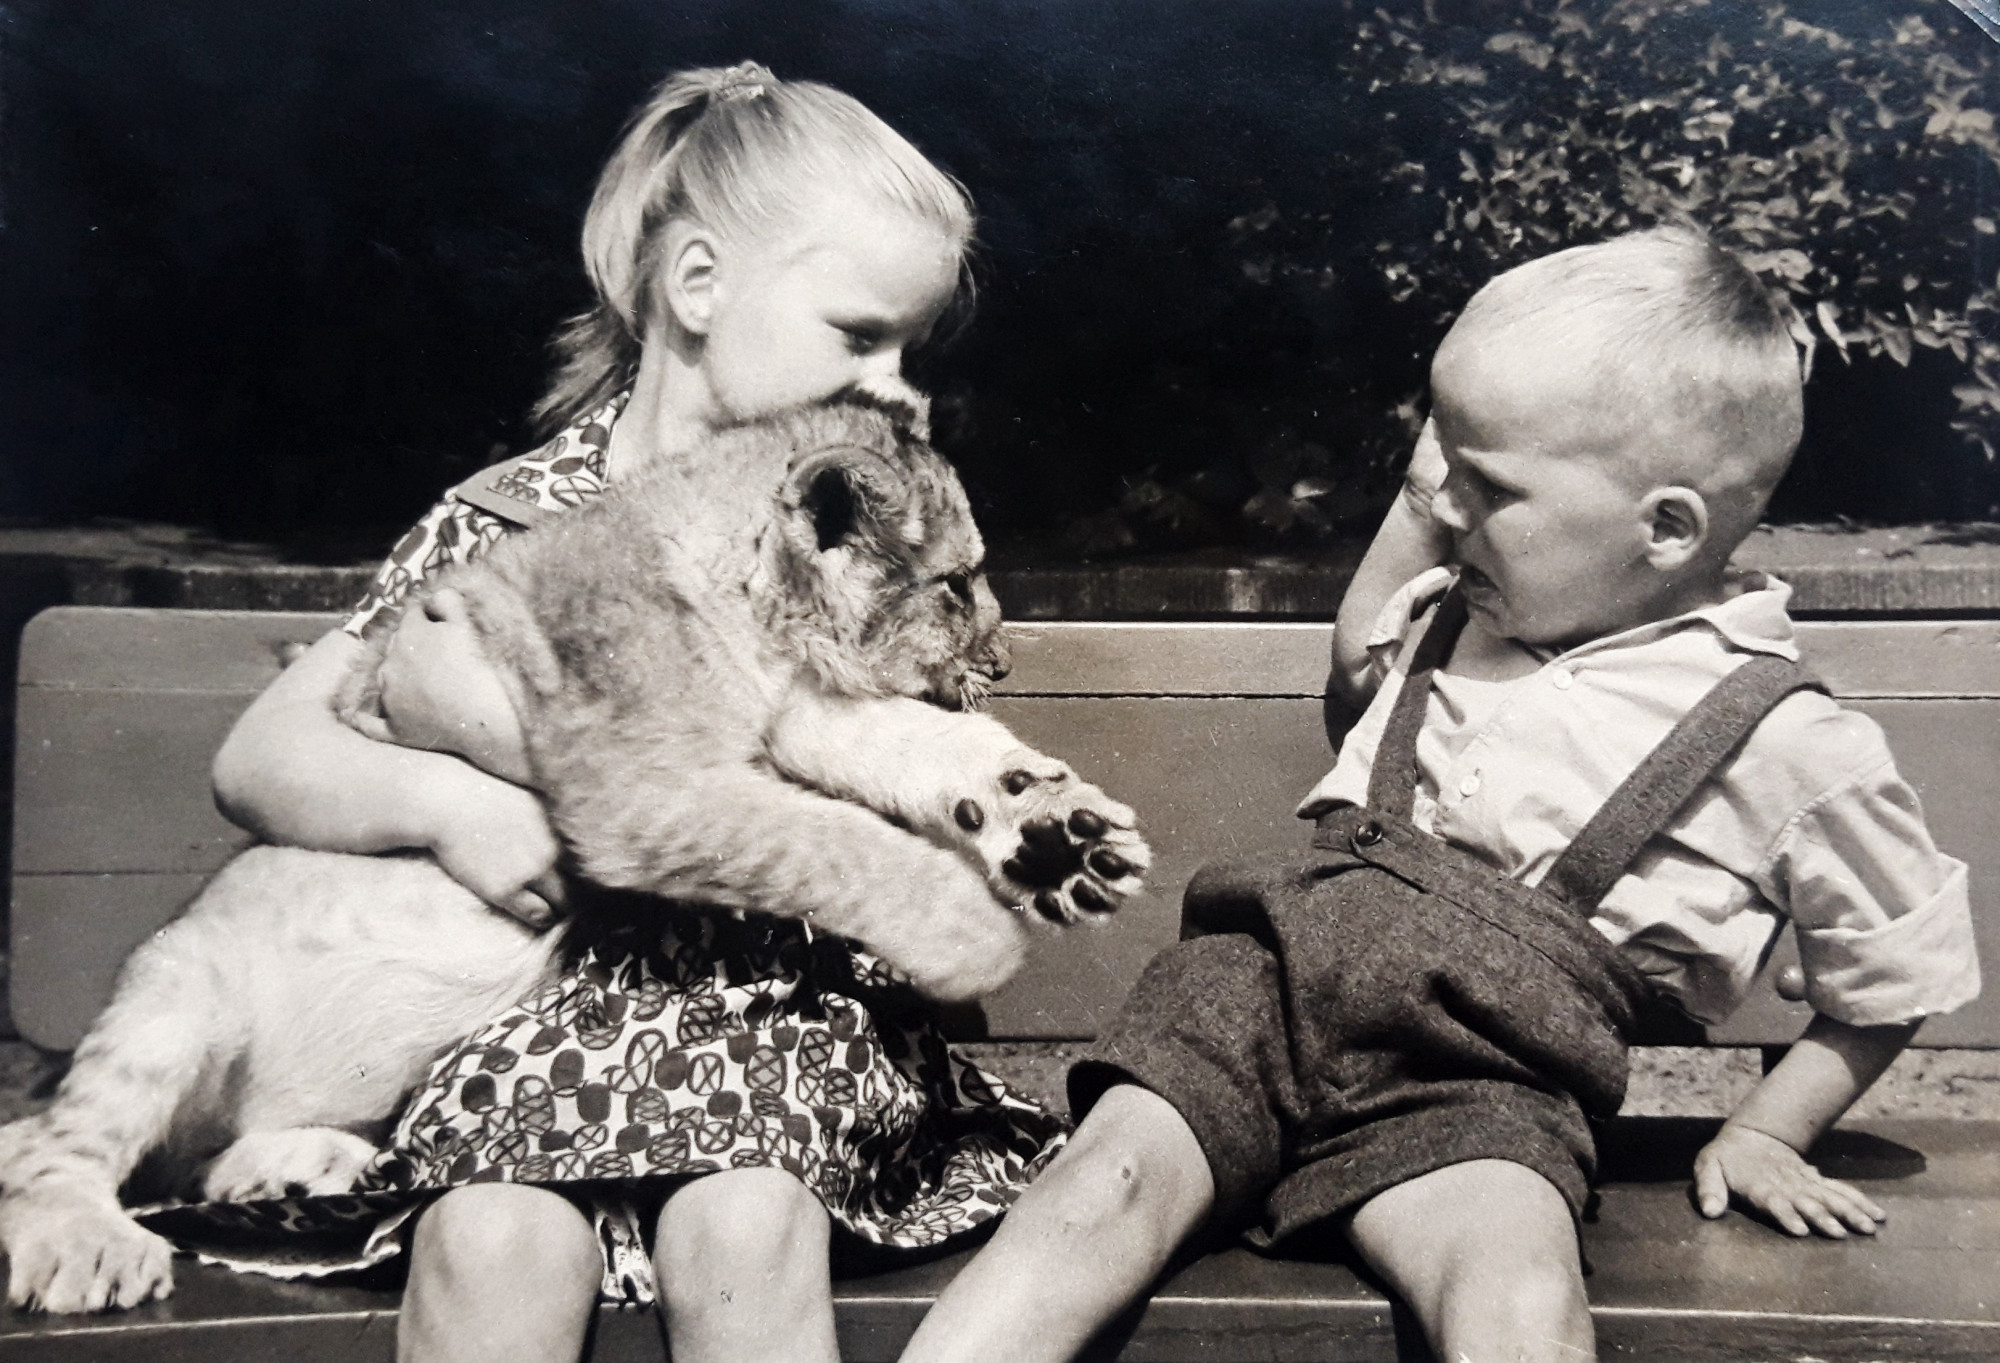 Auf einer Bank sitzen ein Mädchen und ein Junge. Das Mädchen umklammert mit beiden Armen ein Löwenjunges vor dem der Junge mit ängstlicher Mimik und Gestik zurückschreckt.